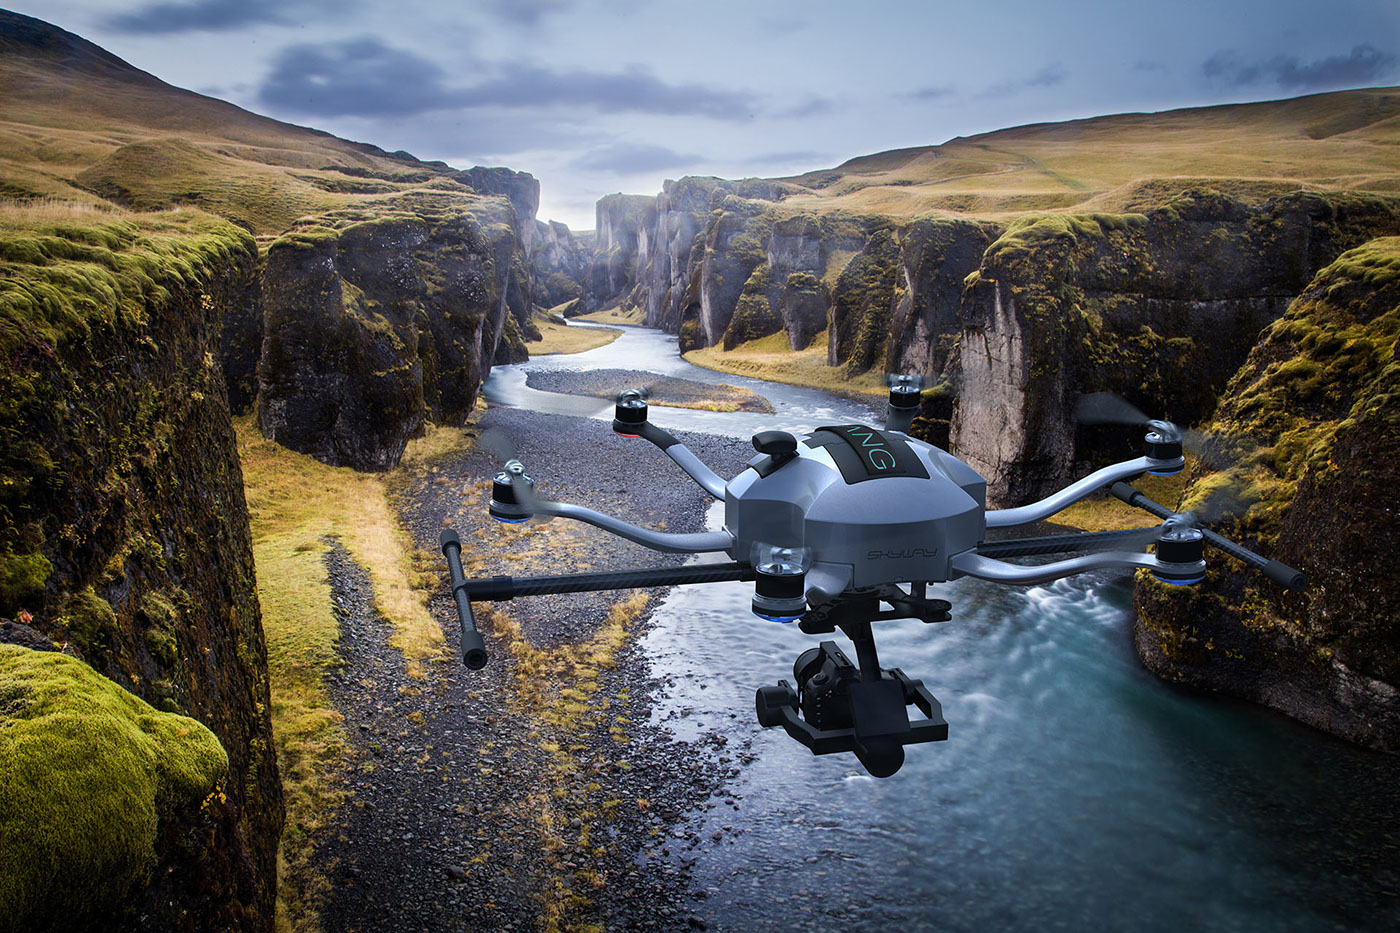 Skyway drone hexacopter ehang Carbon Fiber